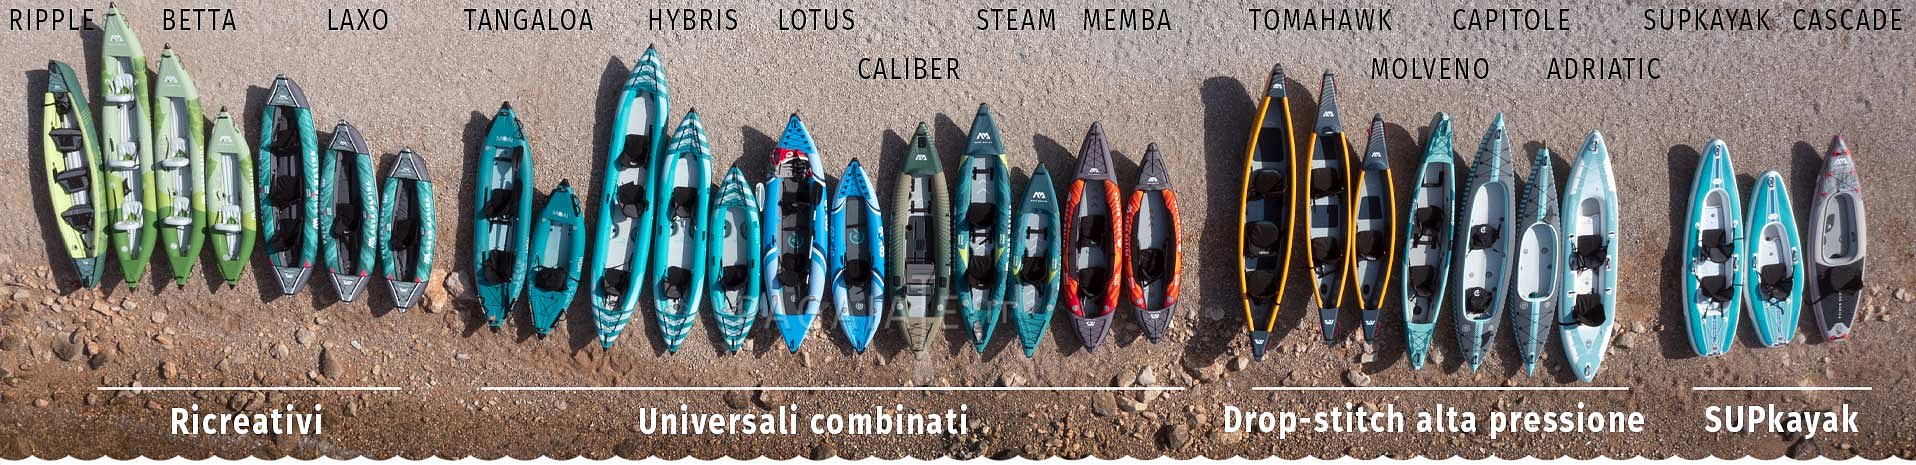 Come scegliere - Kayak, canoa e barche gonfiabili - Pagaiate con noi!